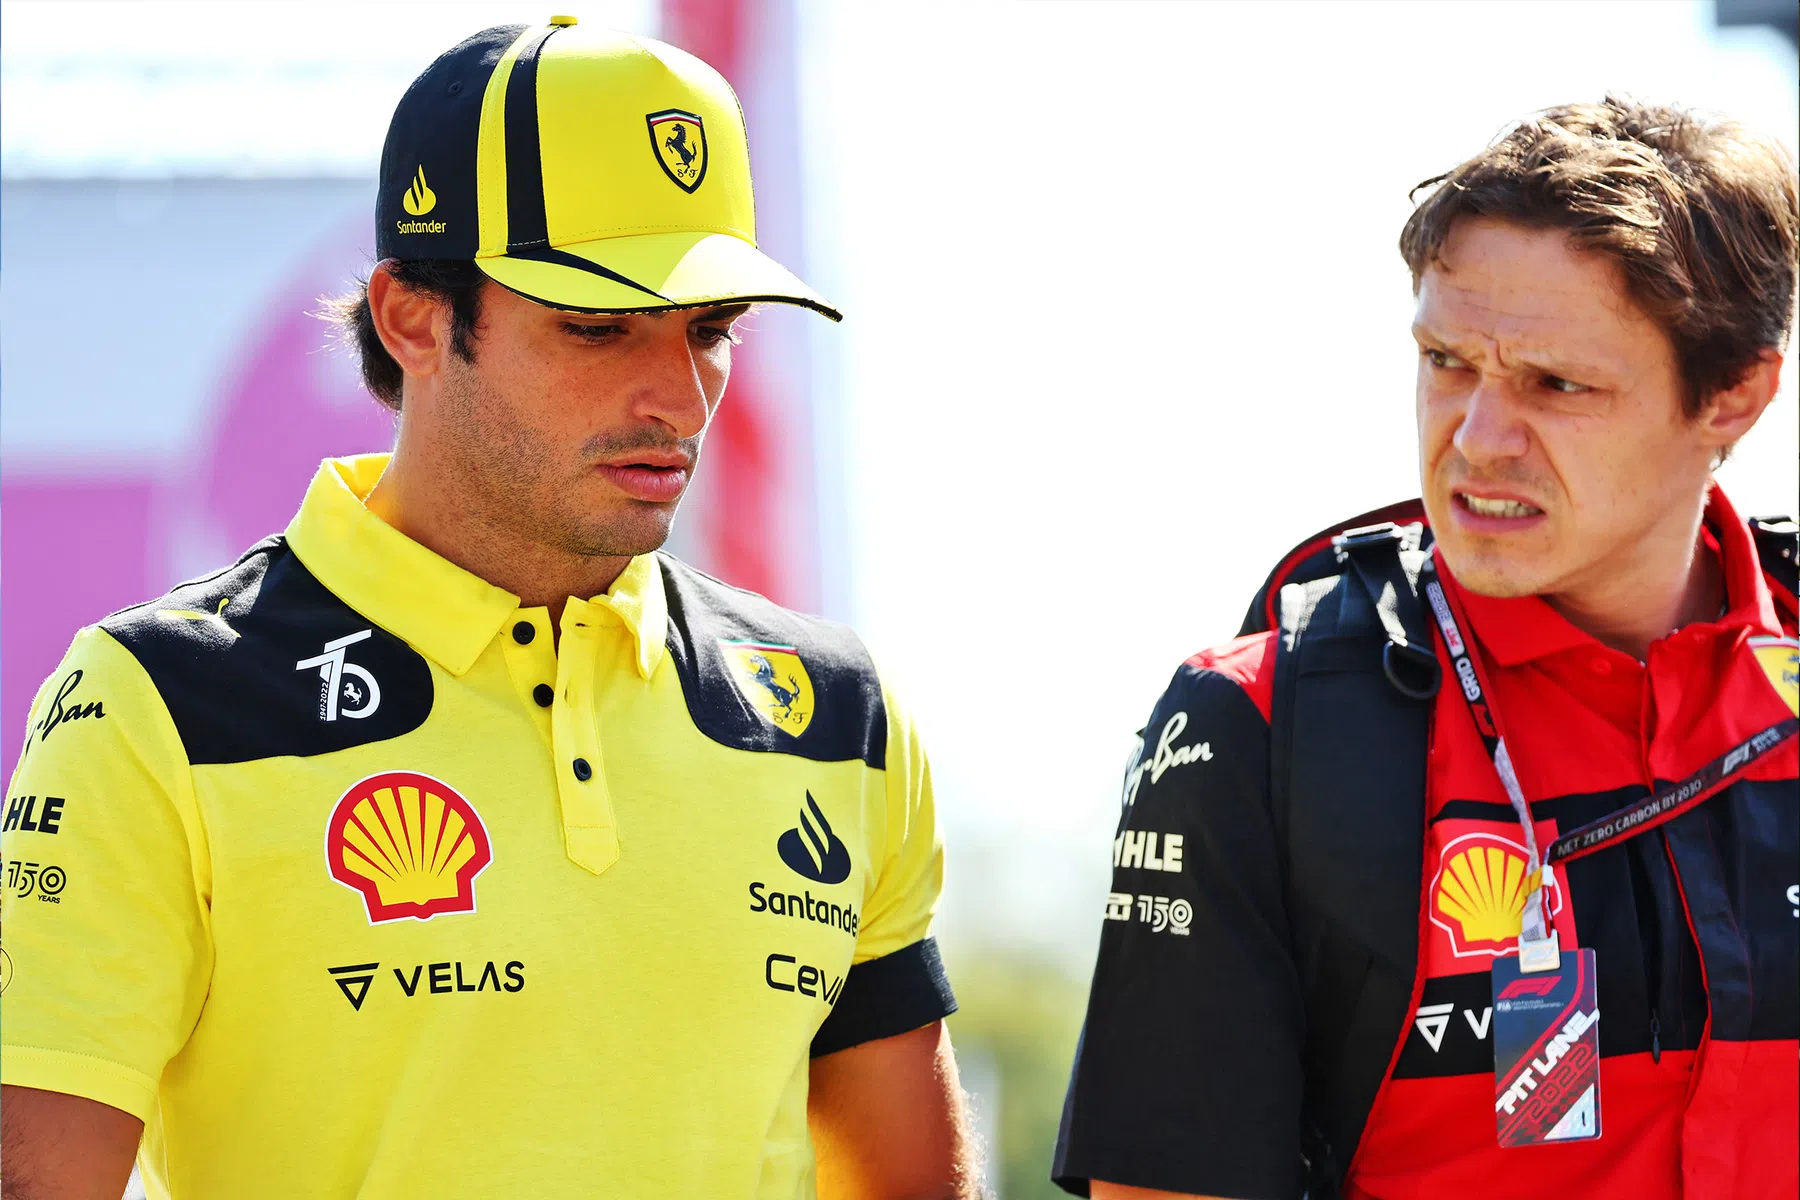 Técnico de desempenho de Sainz vai para a Red Bull trabalhar com Verstappen